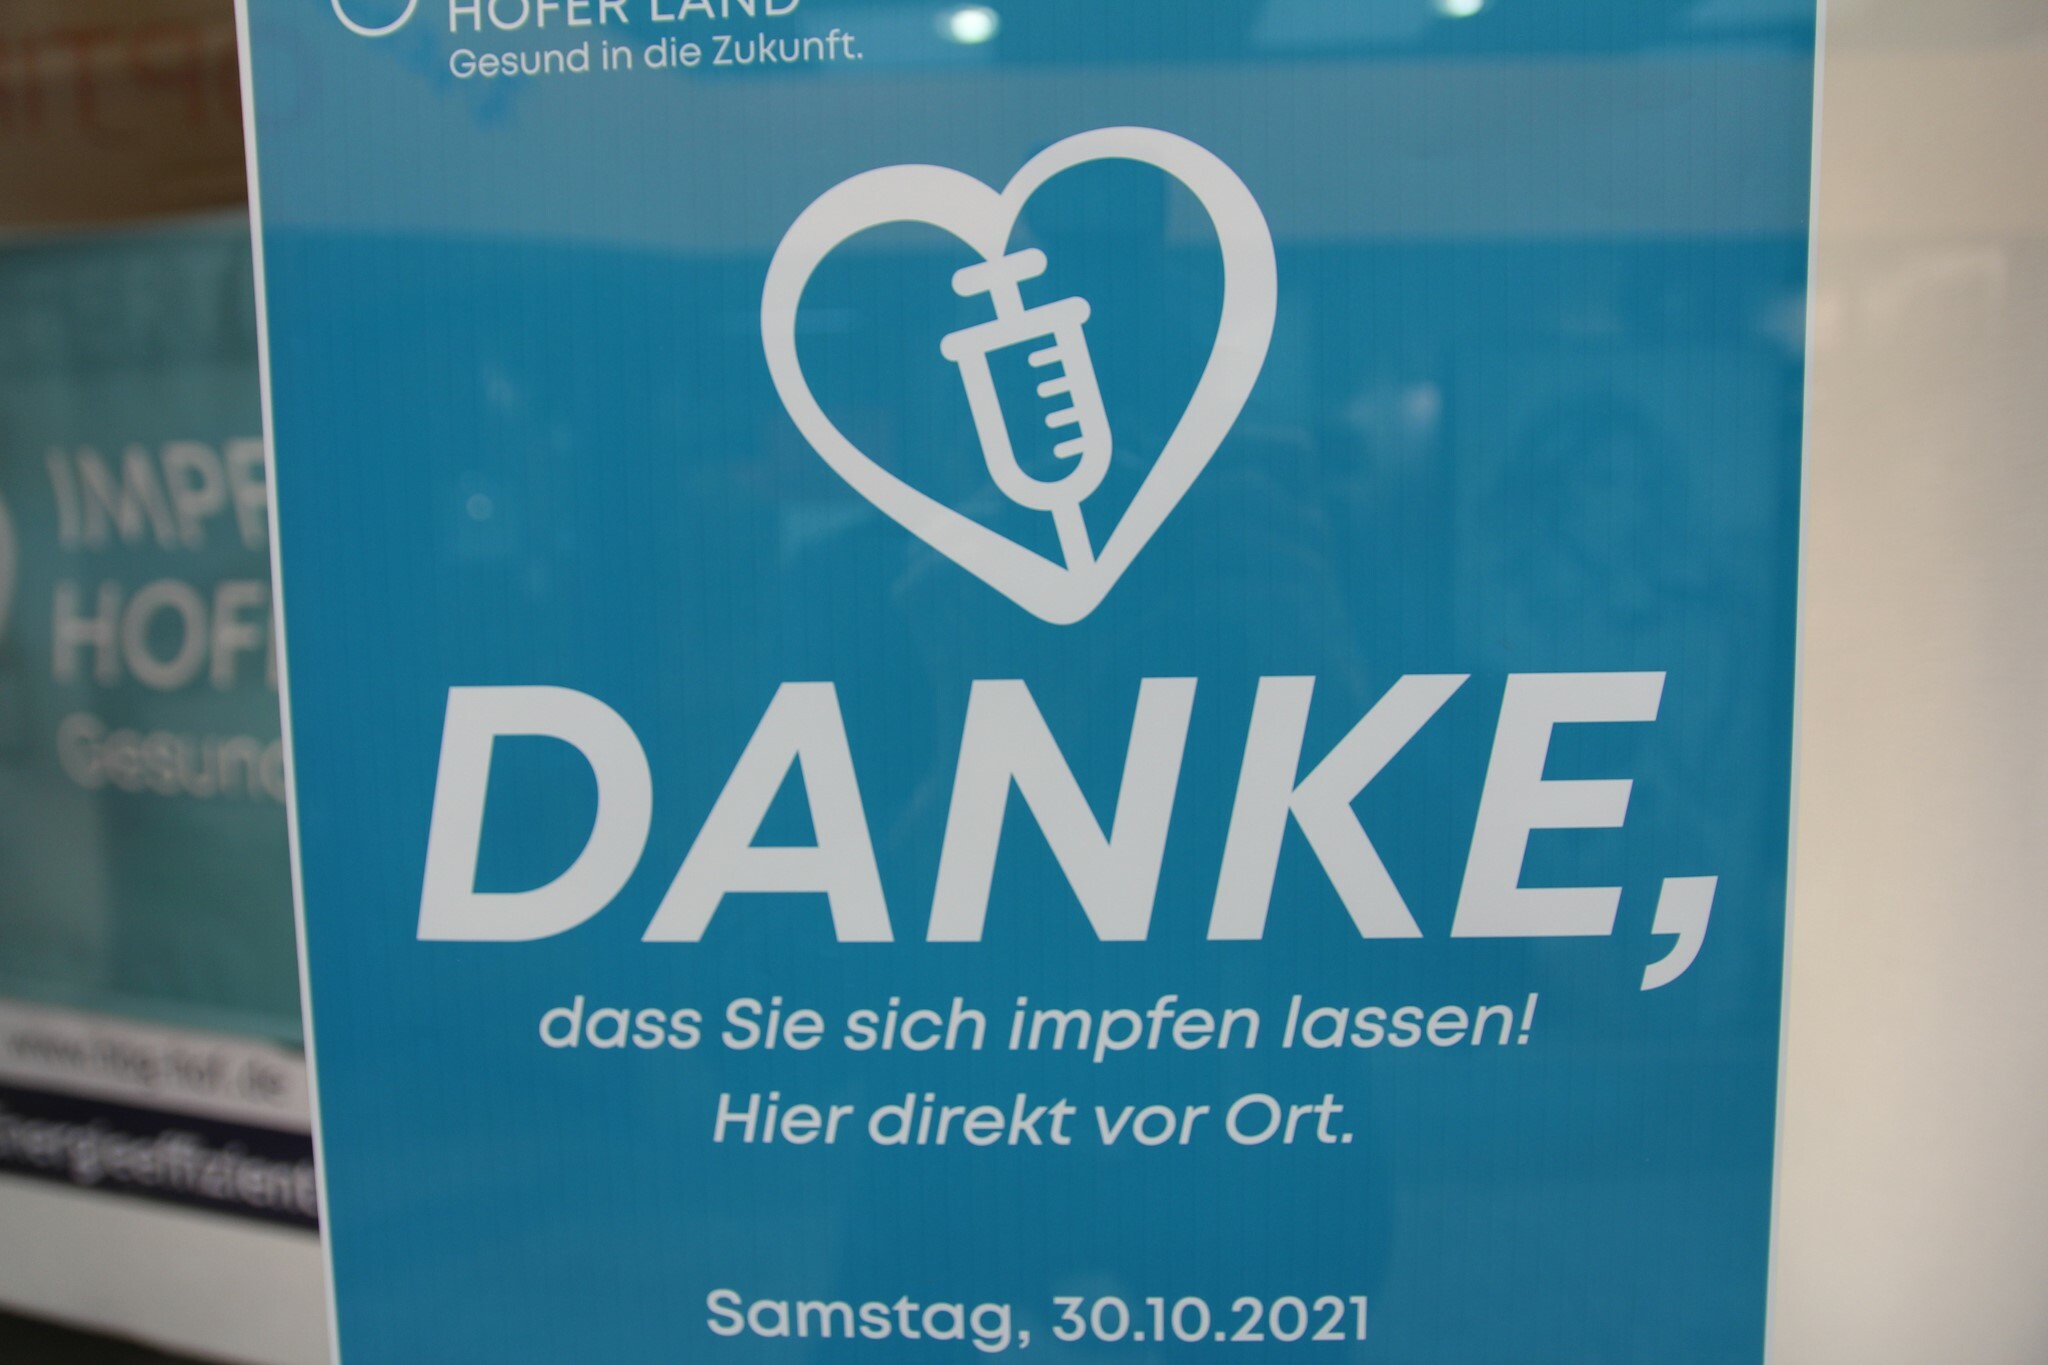 Vaccination campaign in the Altstadtpassage